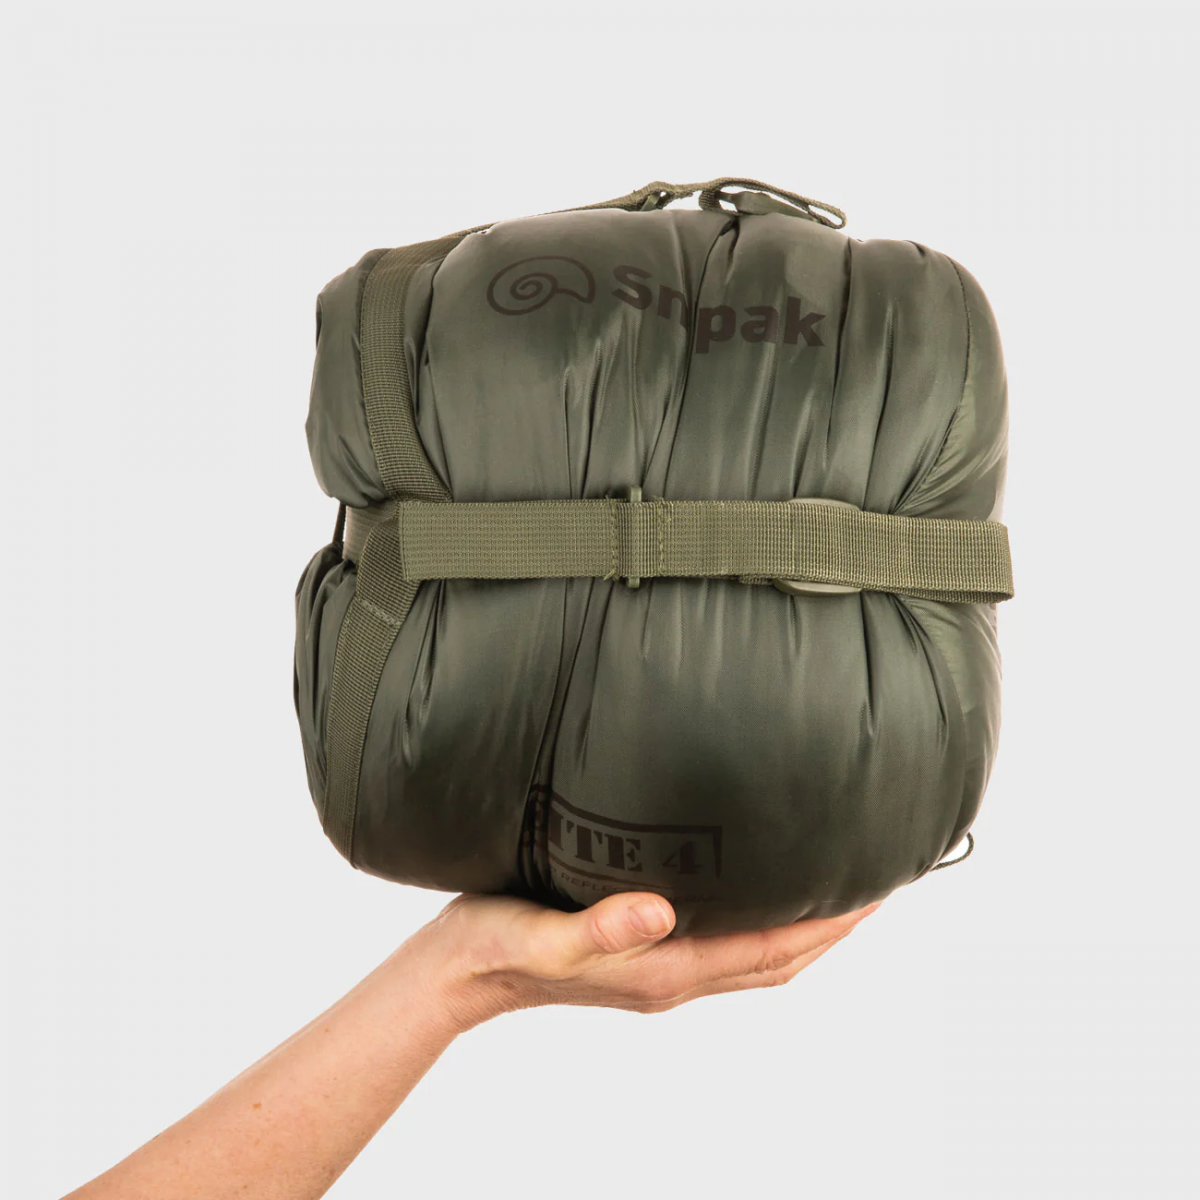 Спальный мешок Snugpak Softie Elite 4 (комф. -10°C/к. -15°C). Олива 5